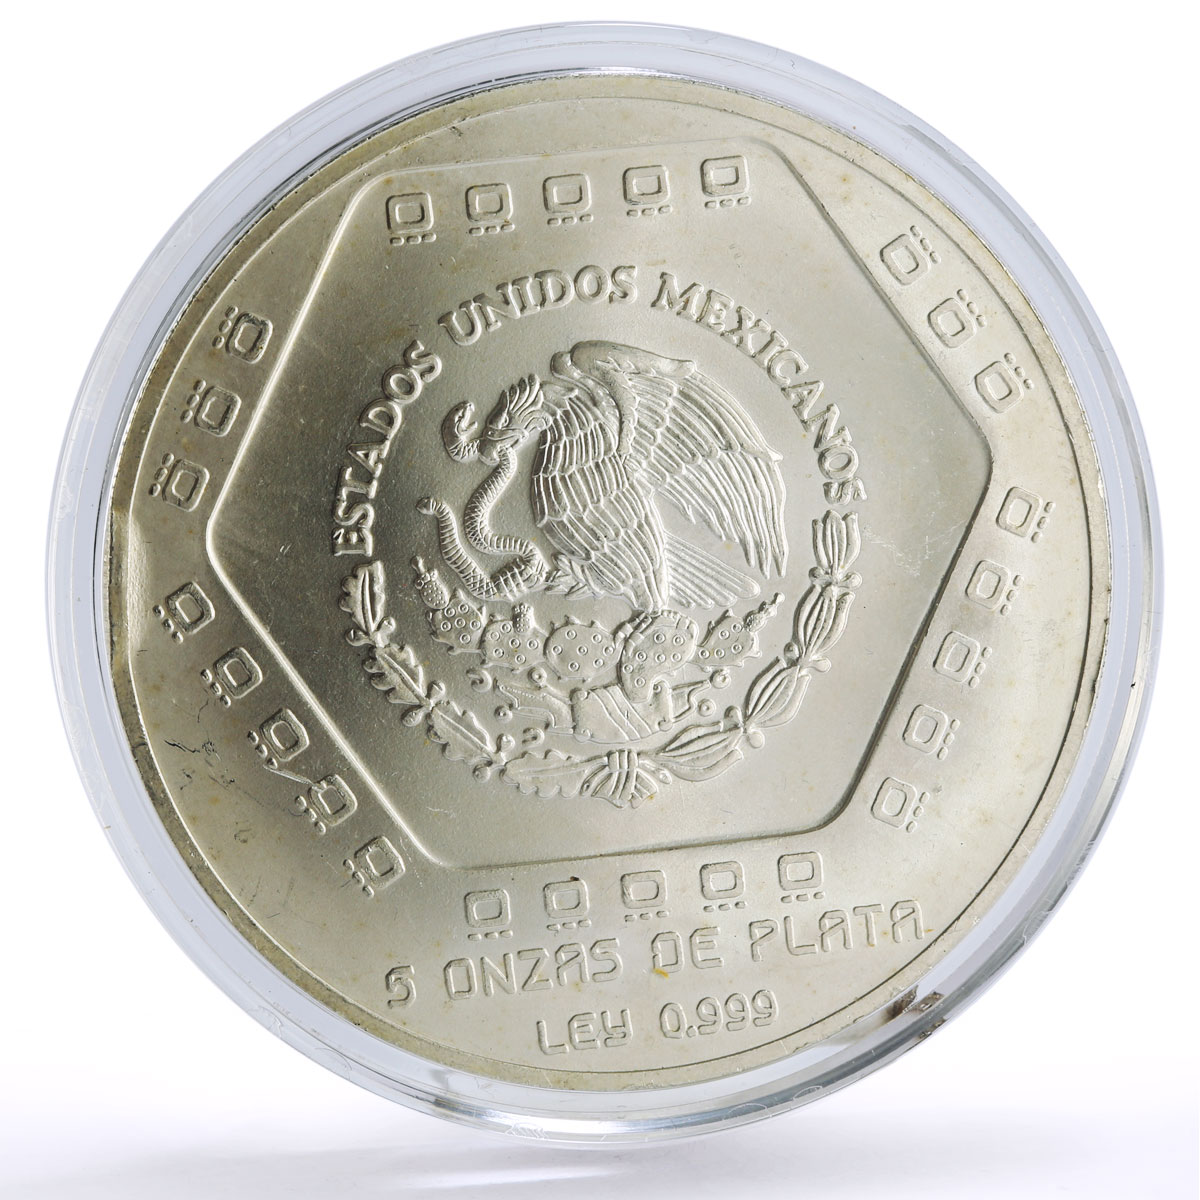 Mexico 10 pesos Precolombina Piramide Castillo Pyramid 5 oz silver coin 1994